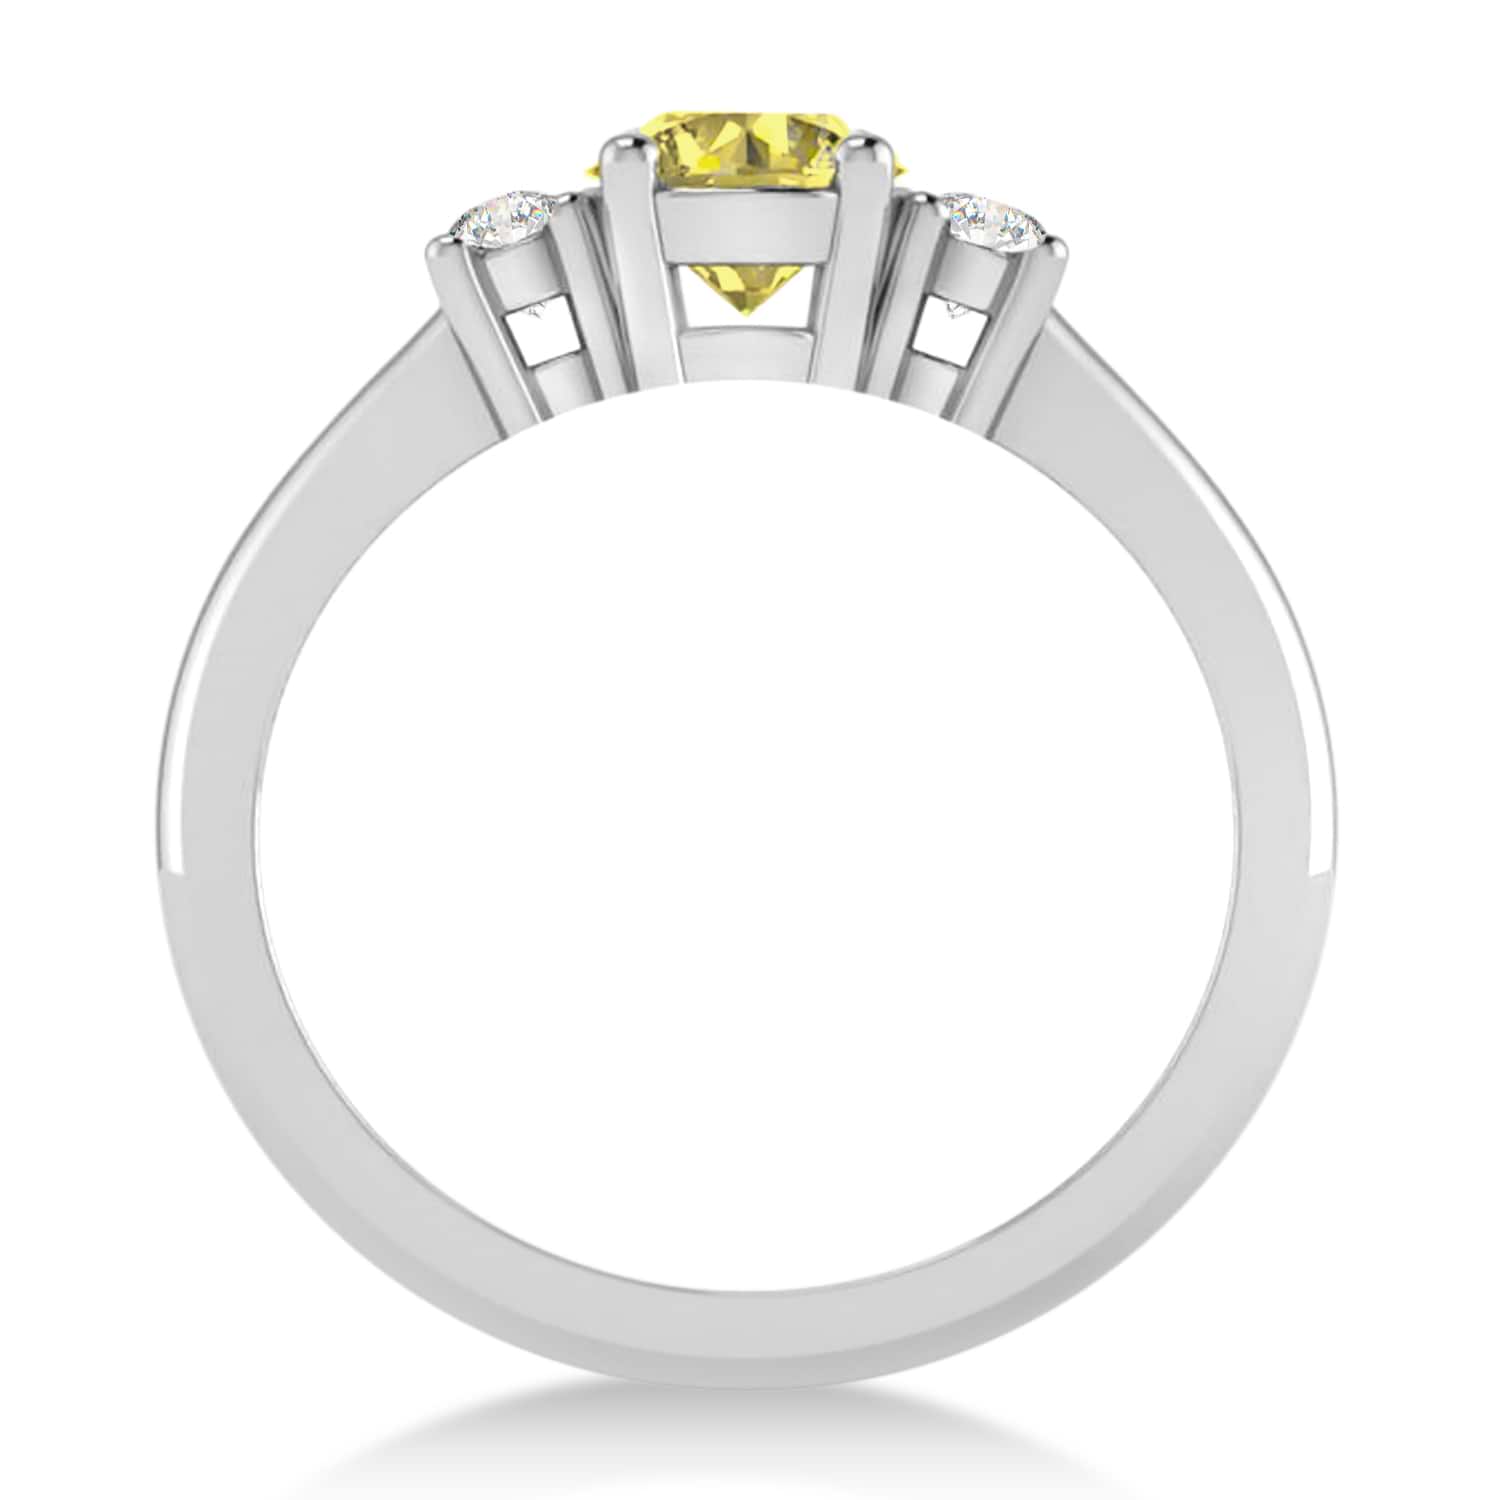 Round Yellow & White Diamond Three-Stone Engagement Ring 14k White Gold (0.89ct)